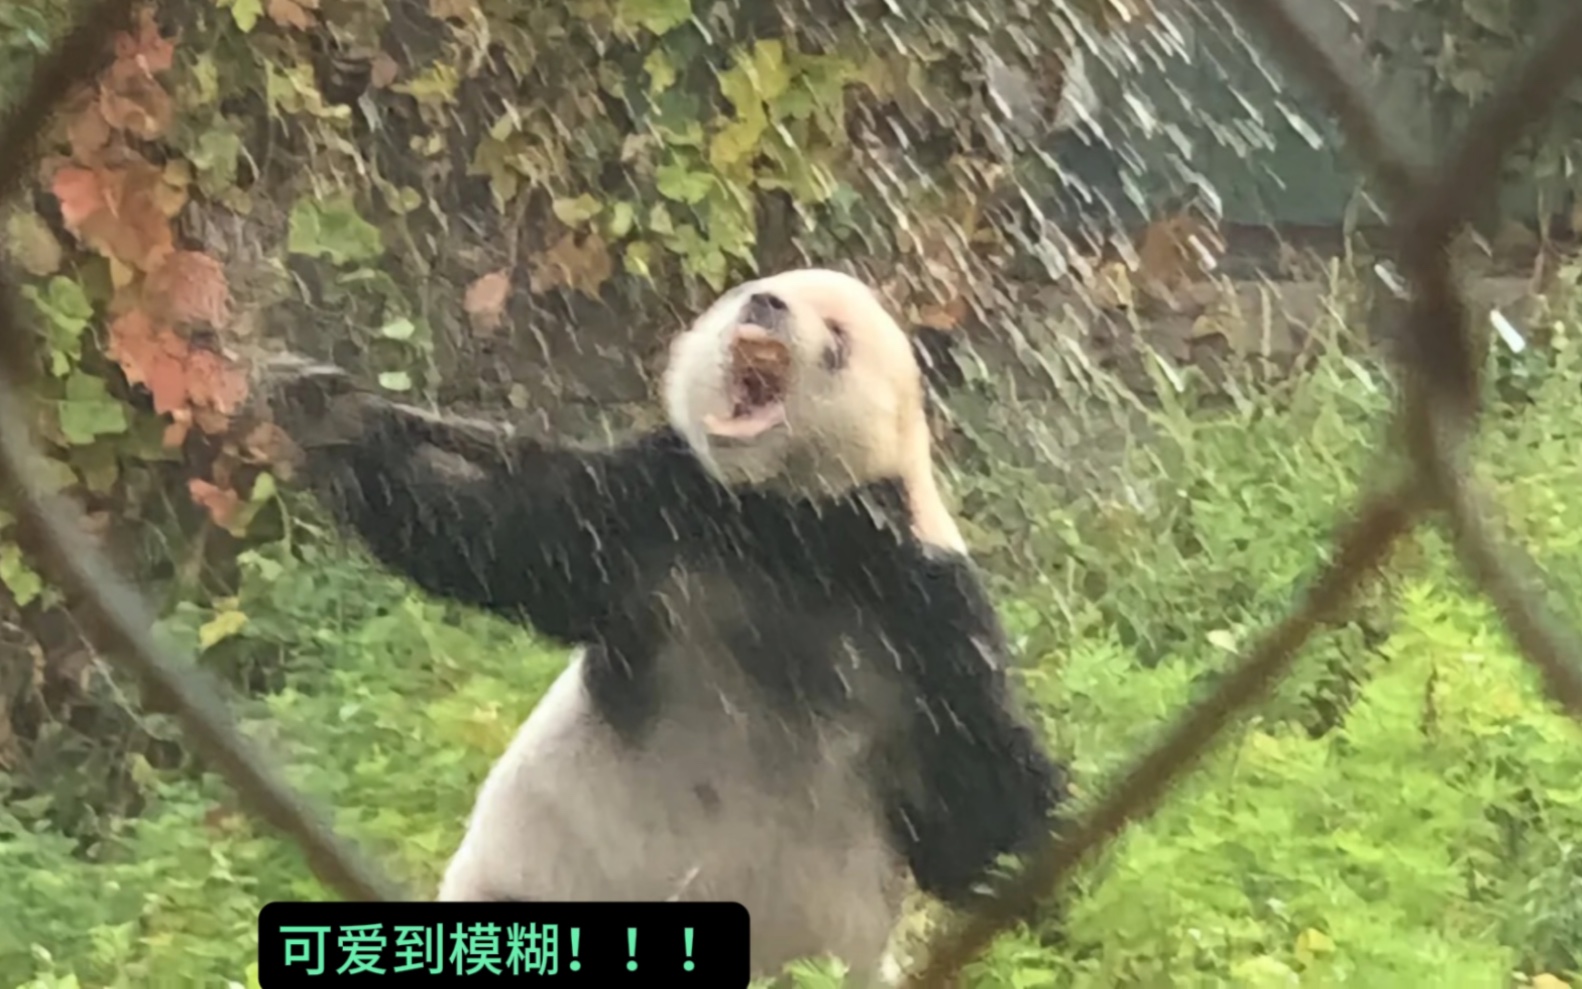 萌二：我妈虽然没有教我掰竹子，但也没有教会我淋雨，哼！#大熊猫萌二 #大熊猫萌萌